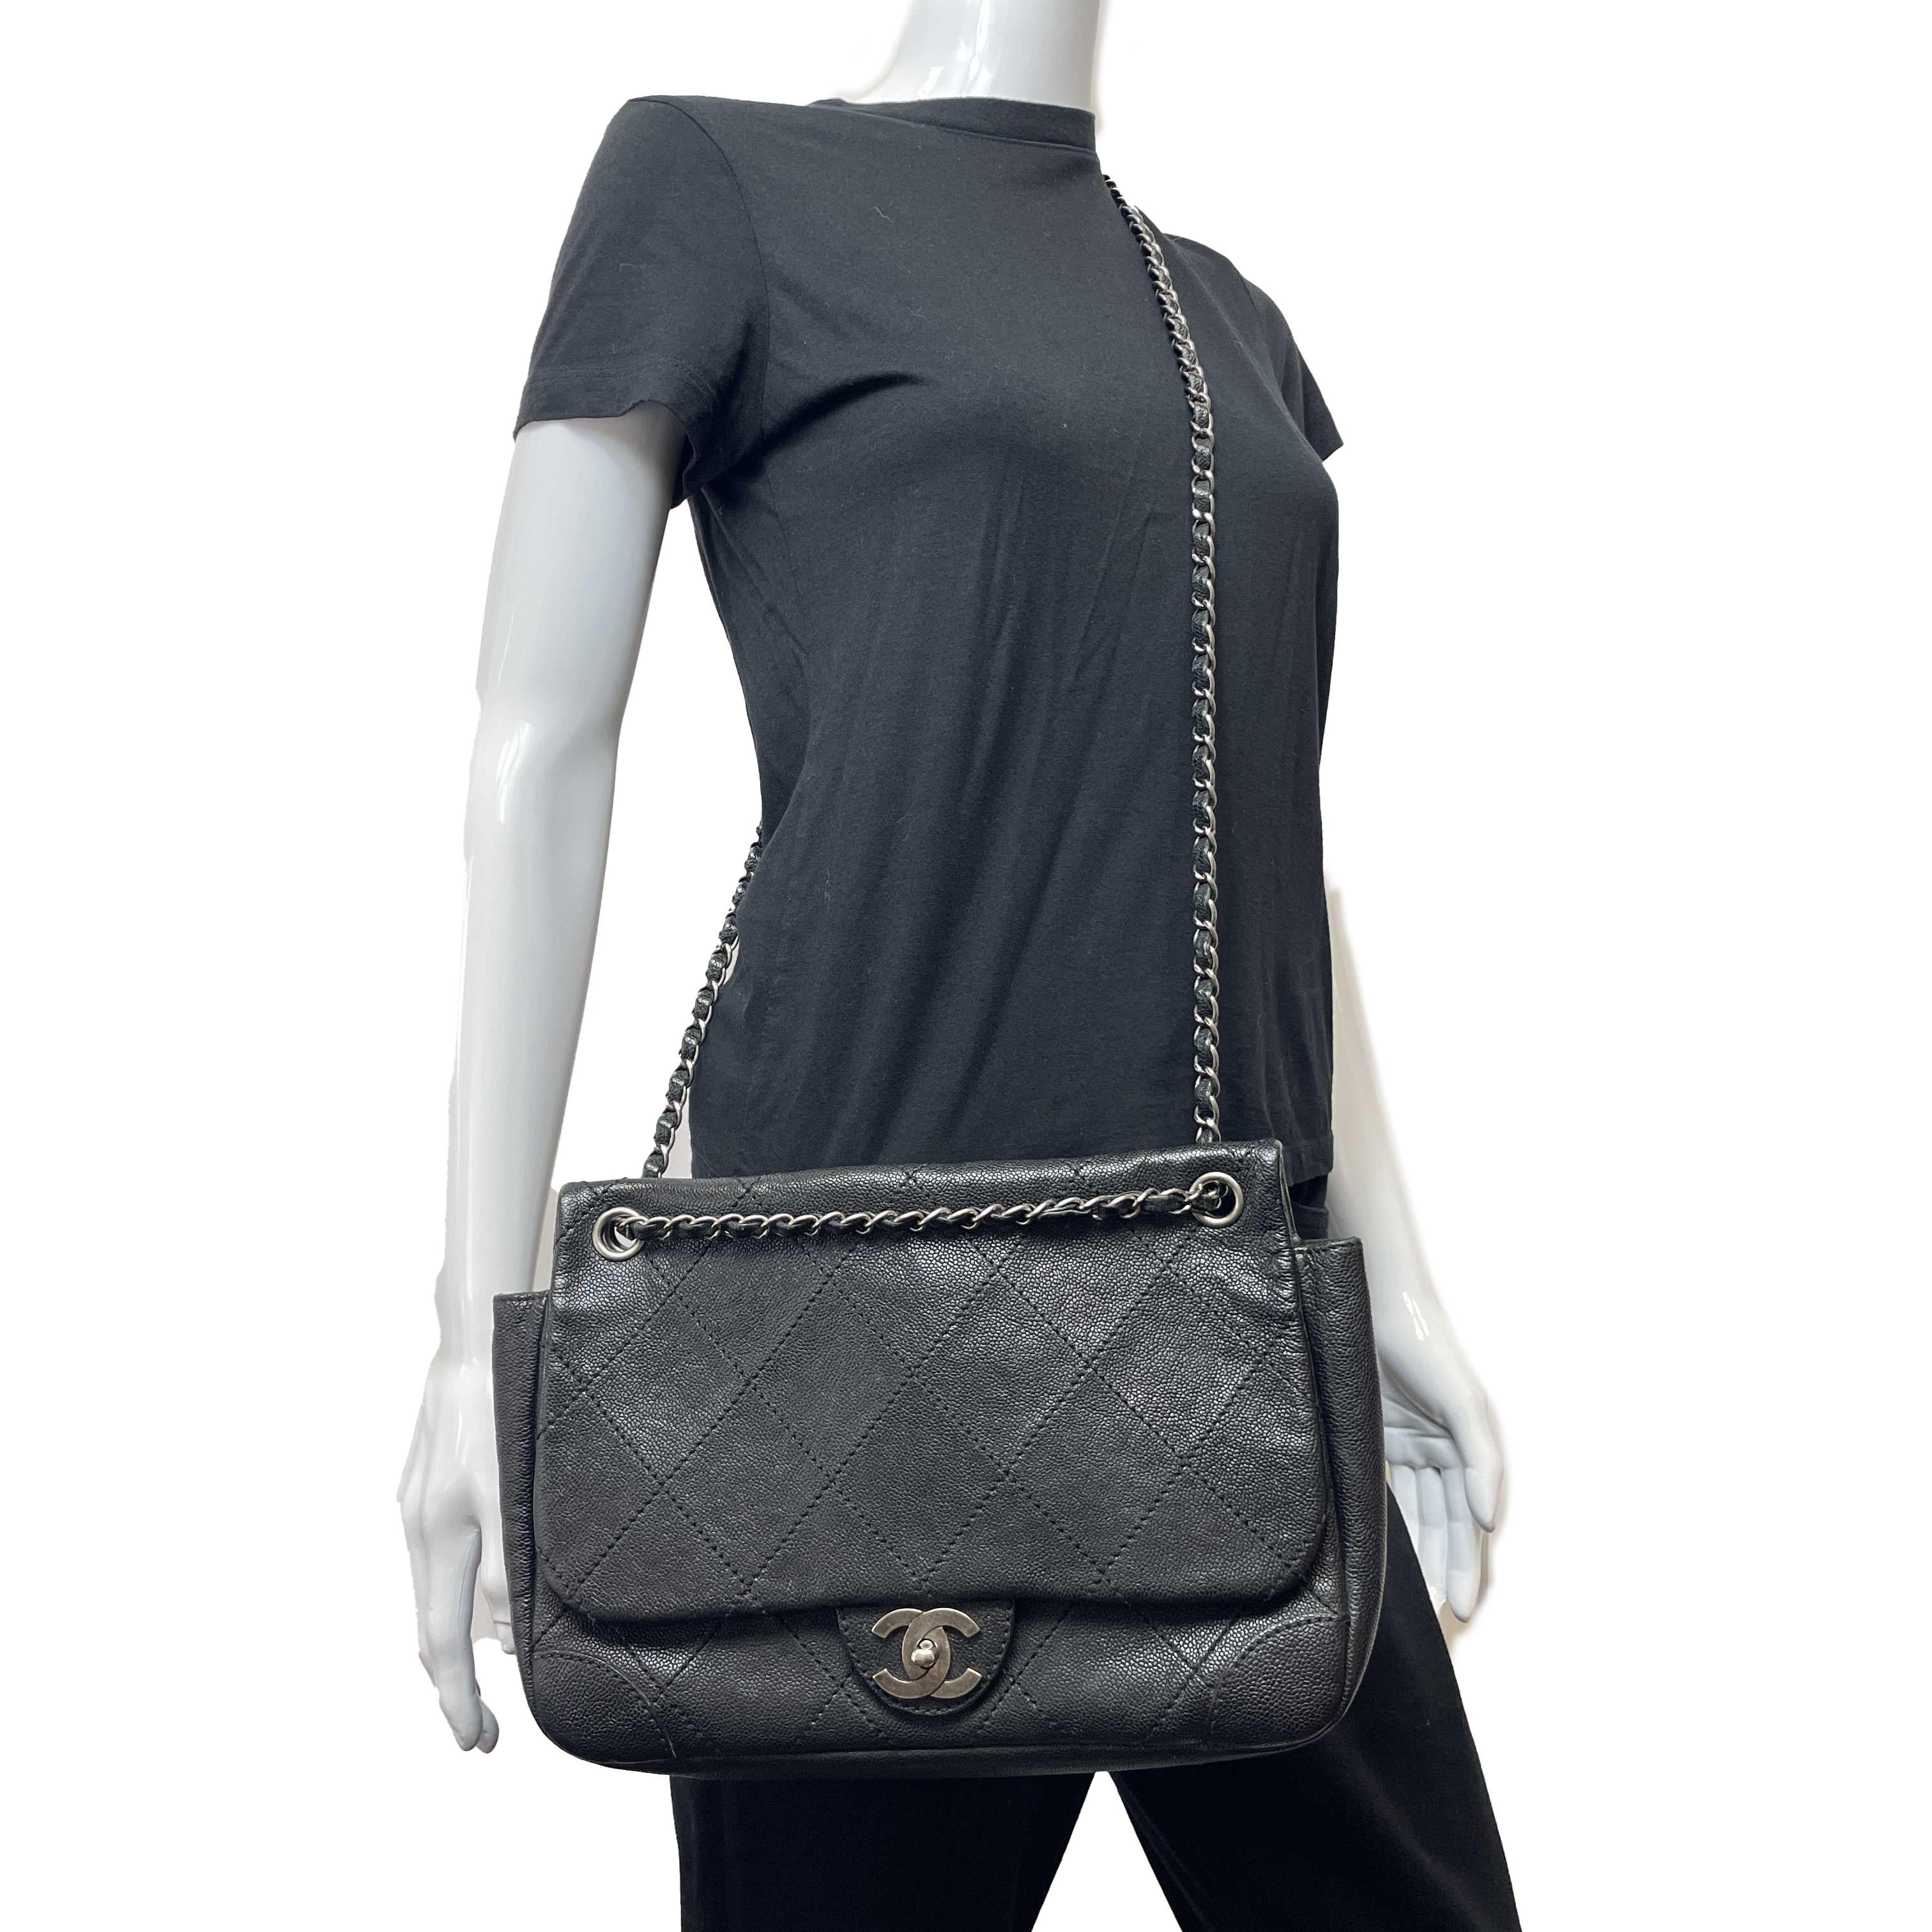 	CHANEL - CC Ligne Flap Large Bag Black / Silver Caviar Leather Shoulder Bag 15